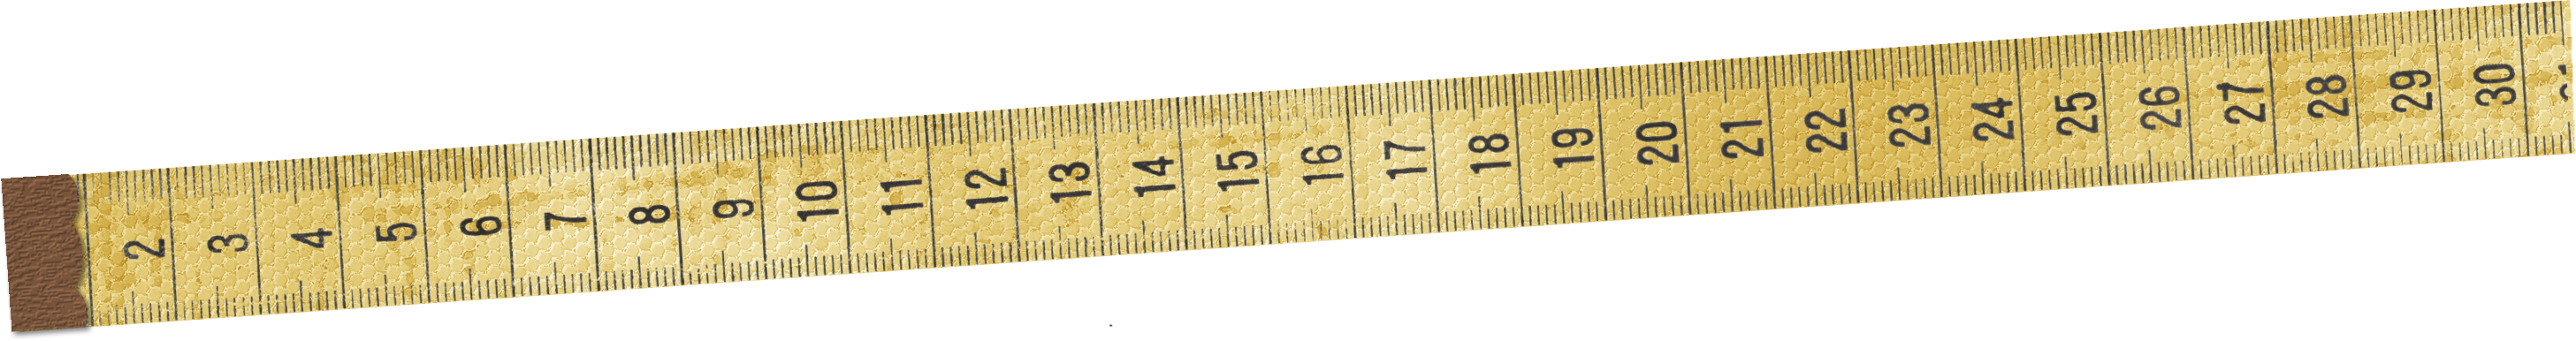 Ruler Measure PNG Image